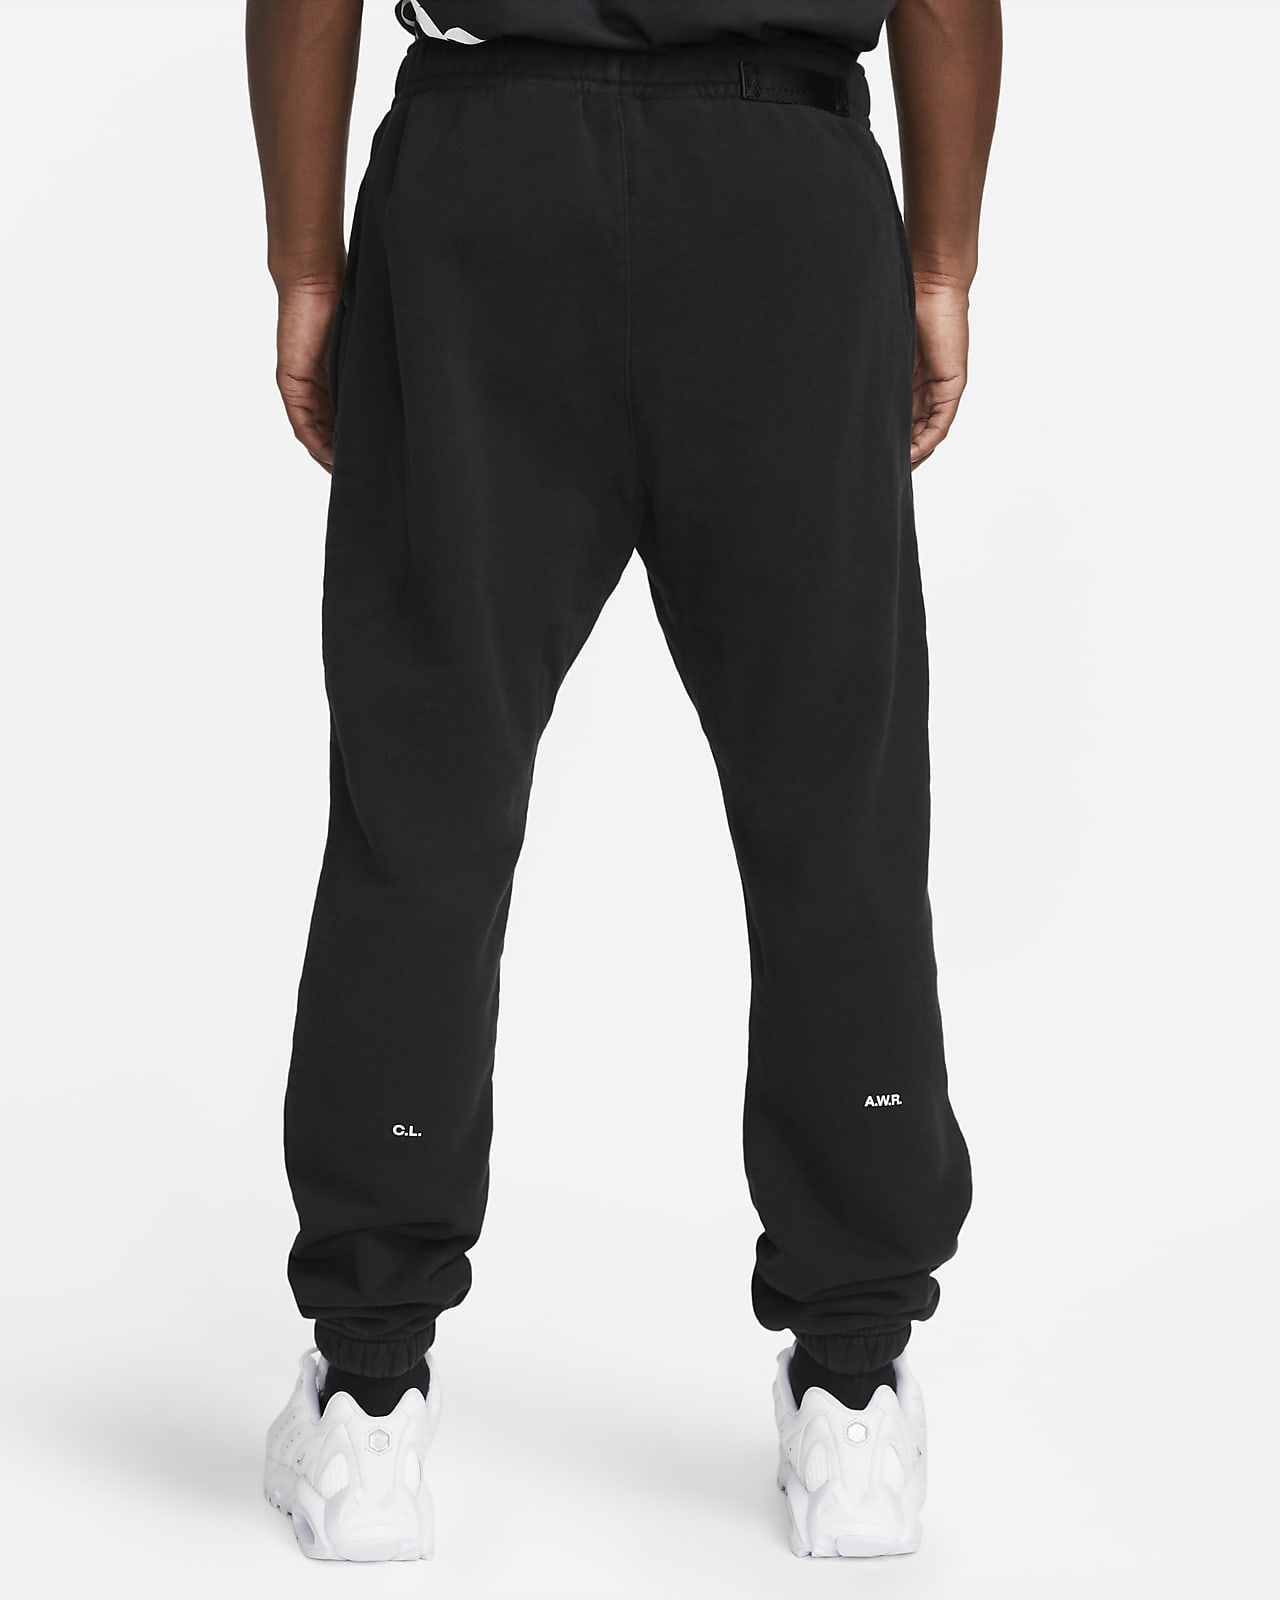 NOCTA Men's Fleece Basketball Pants. Nike.com